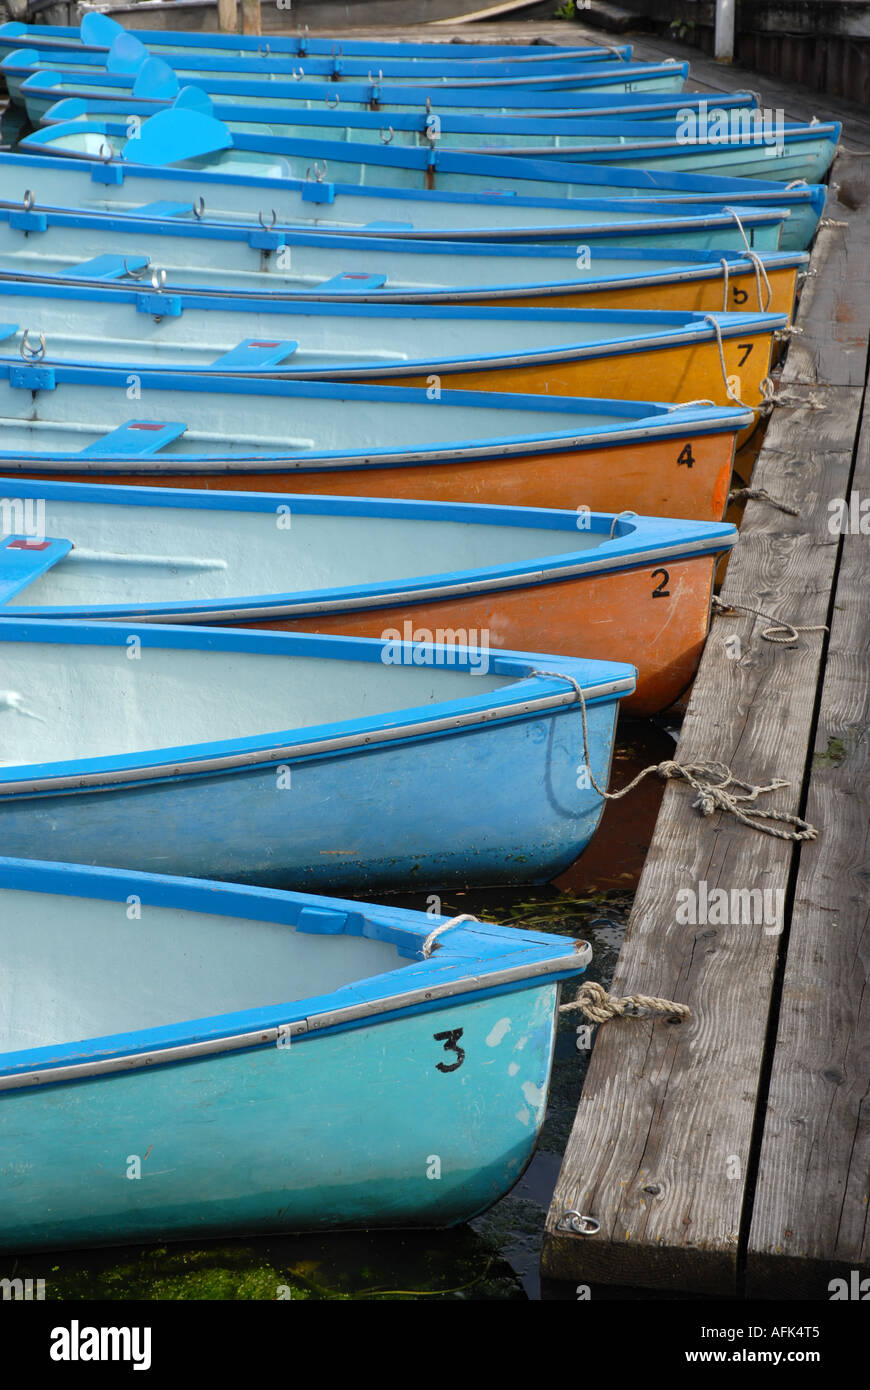 Numerose piccole barche a remi, scafi dipinto in azzurro interno e alcune arancione al di fuori, Ormeggiata al pontile. Foto Stock